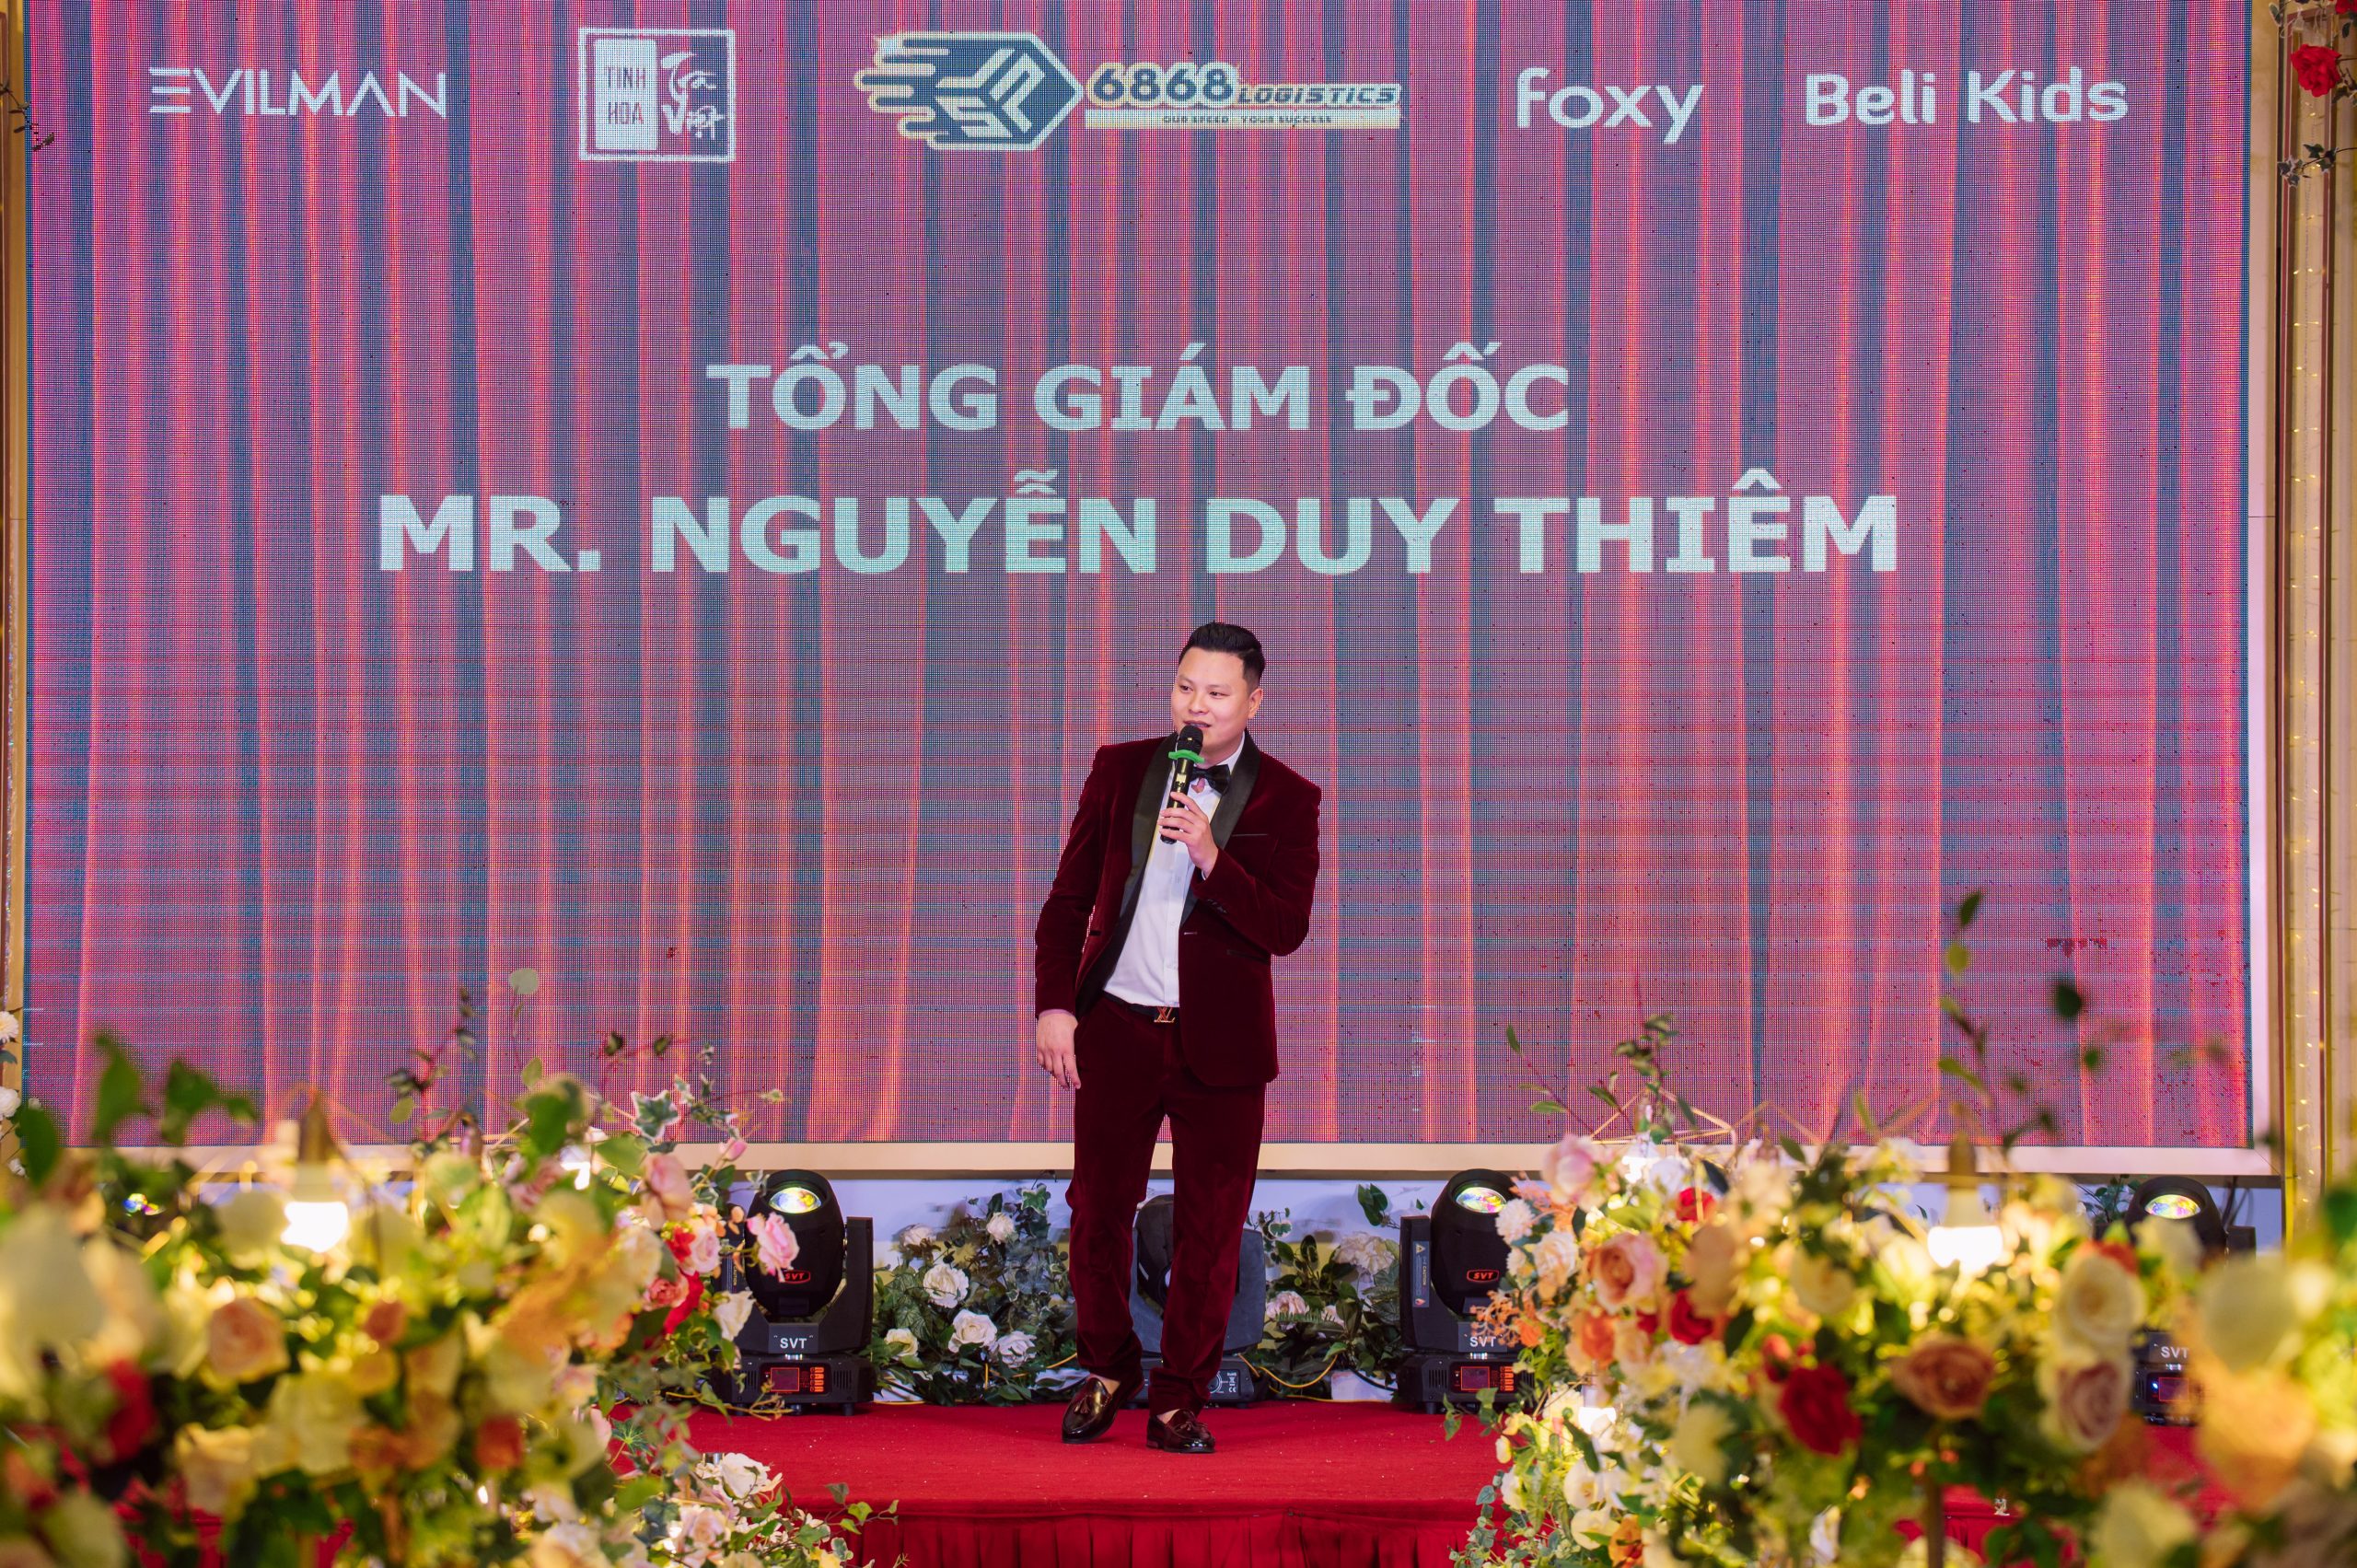 Tổng giám đốc Song Lộc Phát Group - Nguyễn Duy Thiêm phát biểu tại buổi tiệc